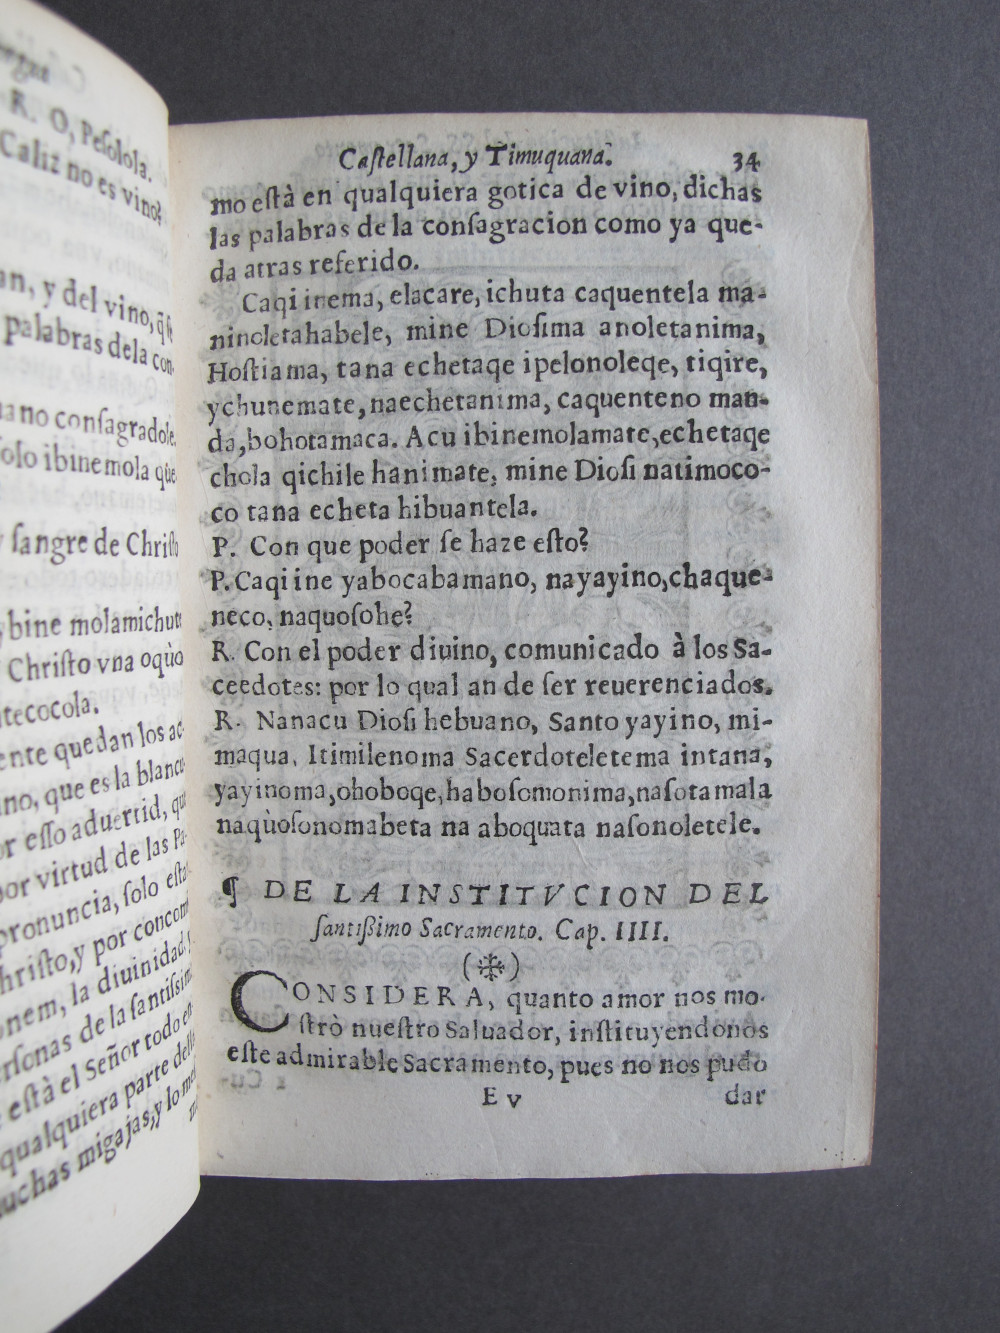 Folio E5 recto